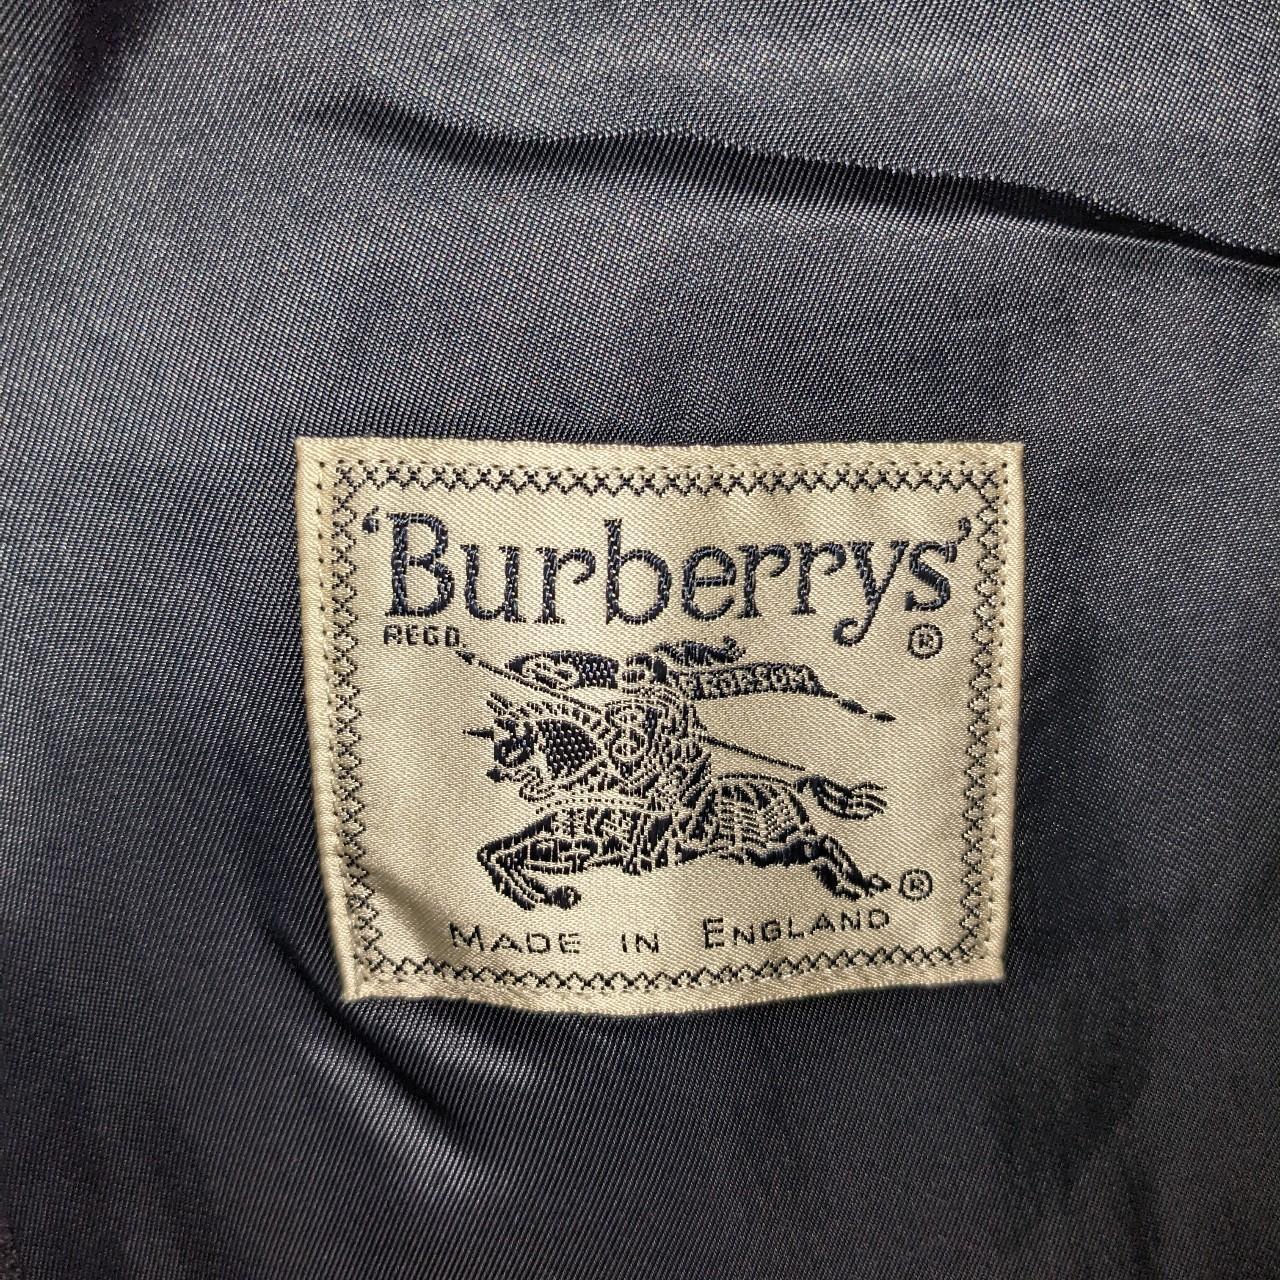 Burberry suit blue fits large-xl - Depop